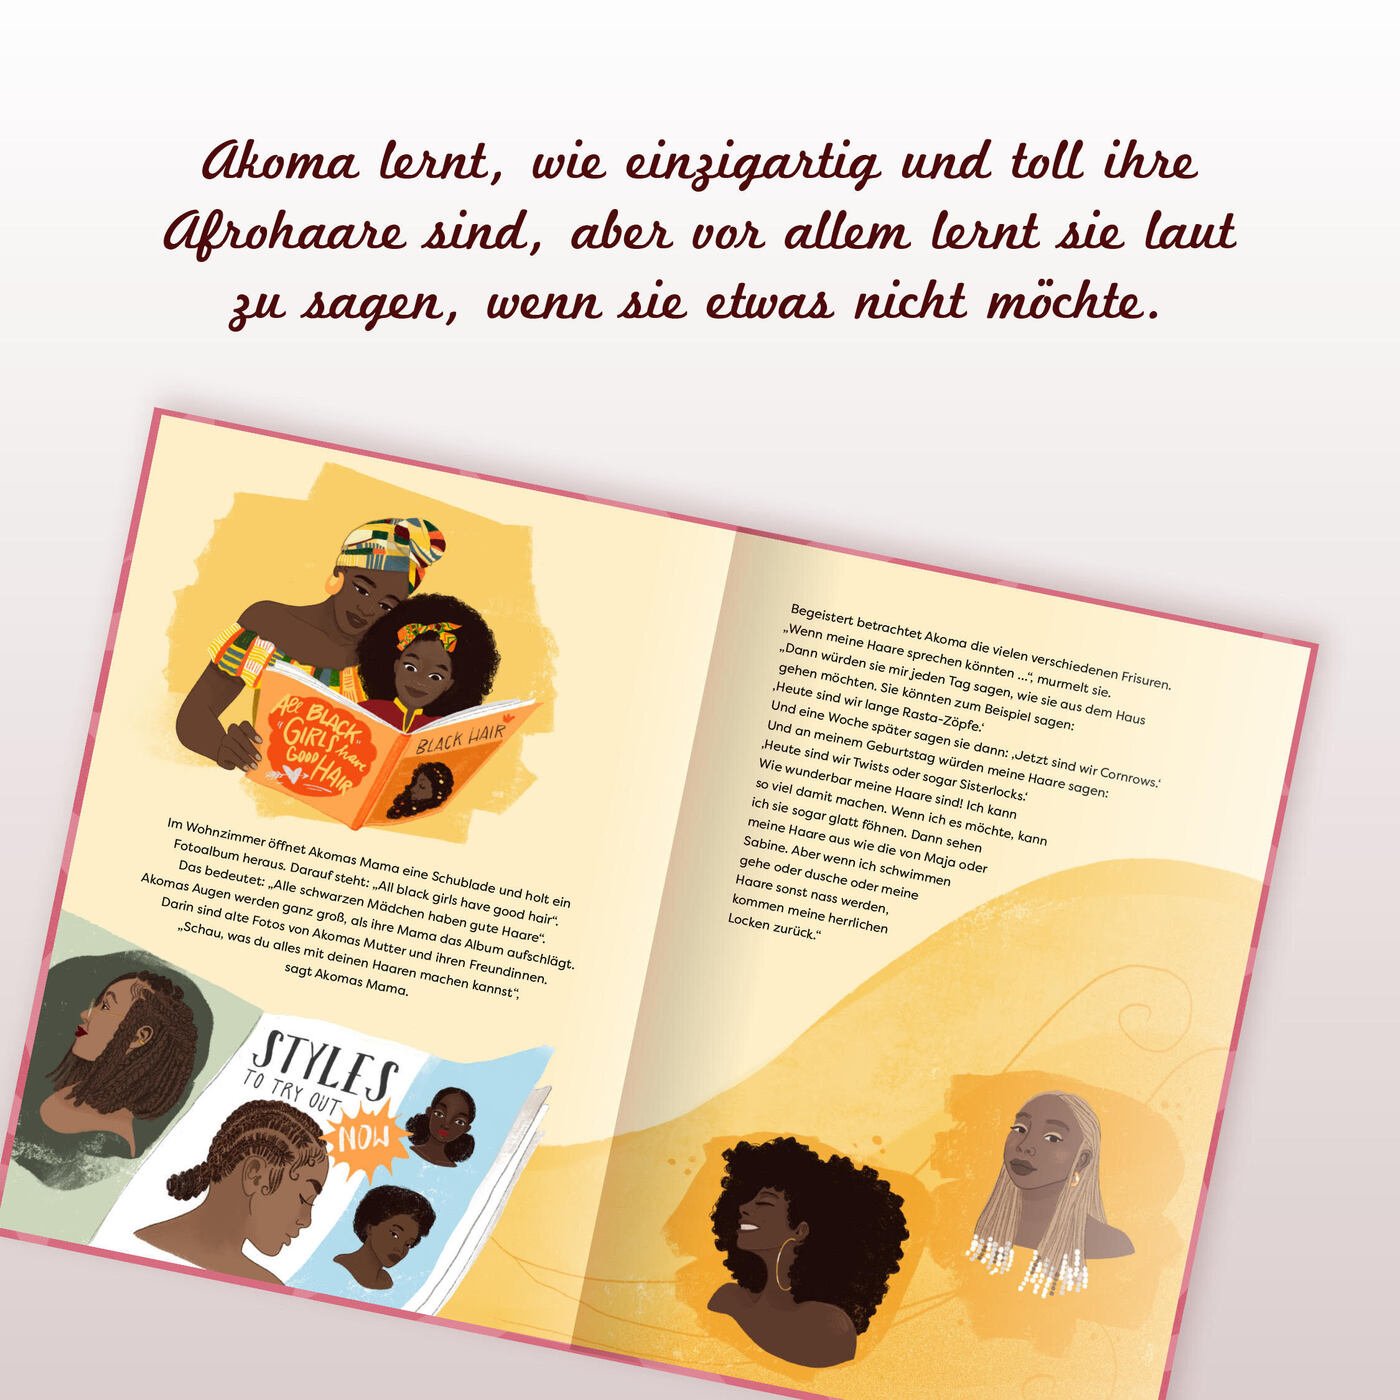 Zu sehen ist das aufgeschlagene Kinderbuch "Wenn meine Haare sprechen könnten" Die Seiten zeigen links die Illustrationen von einer Frau mit Kind die gemeinsam in ein Buch gucken. Auf der rechten Seite sind zwei Frauen mit unterschiedlichen Frisuren zu sehen. 